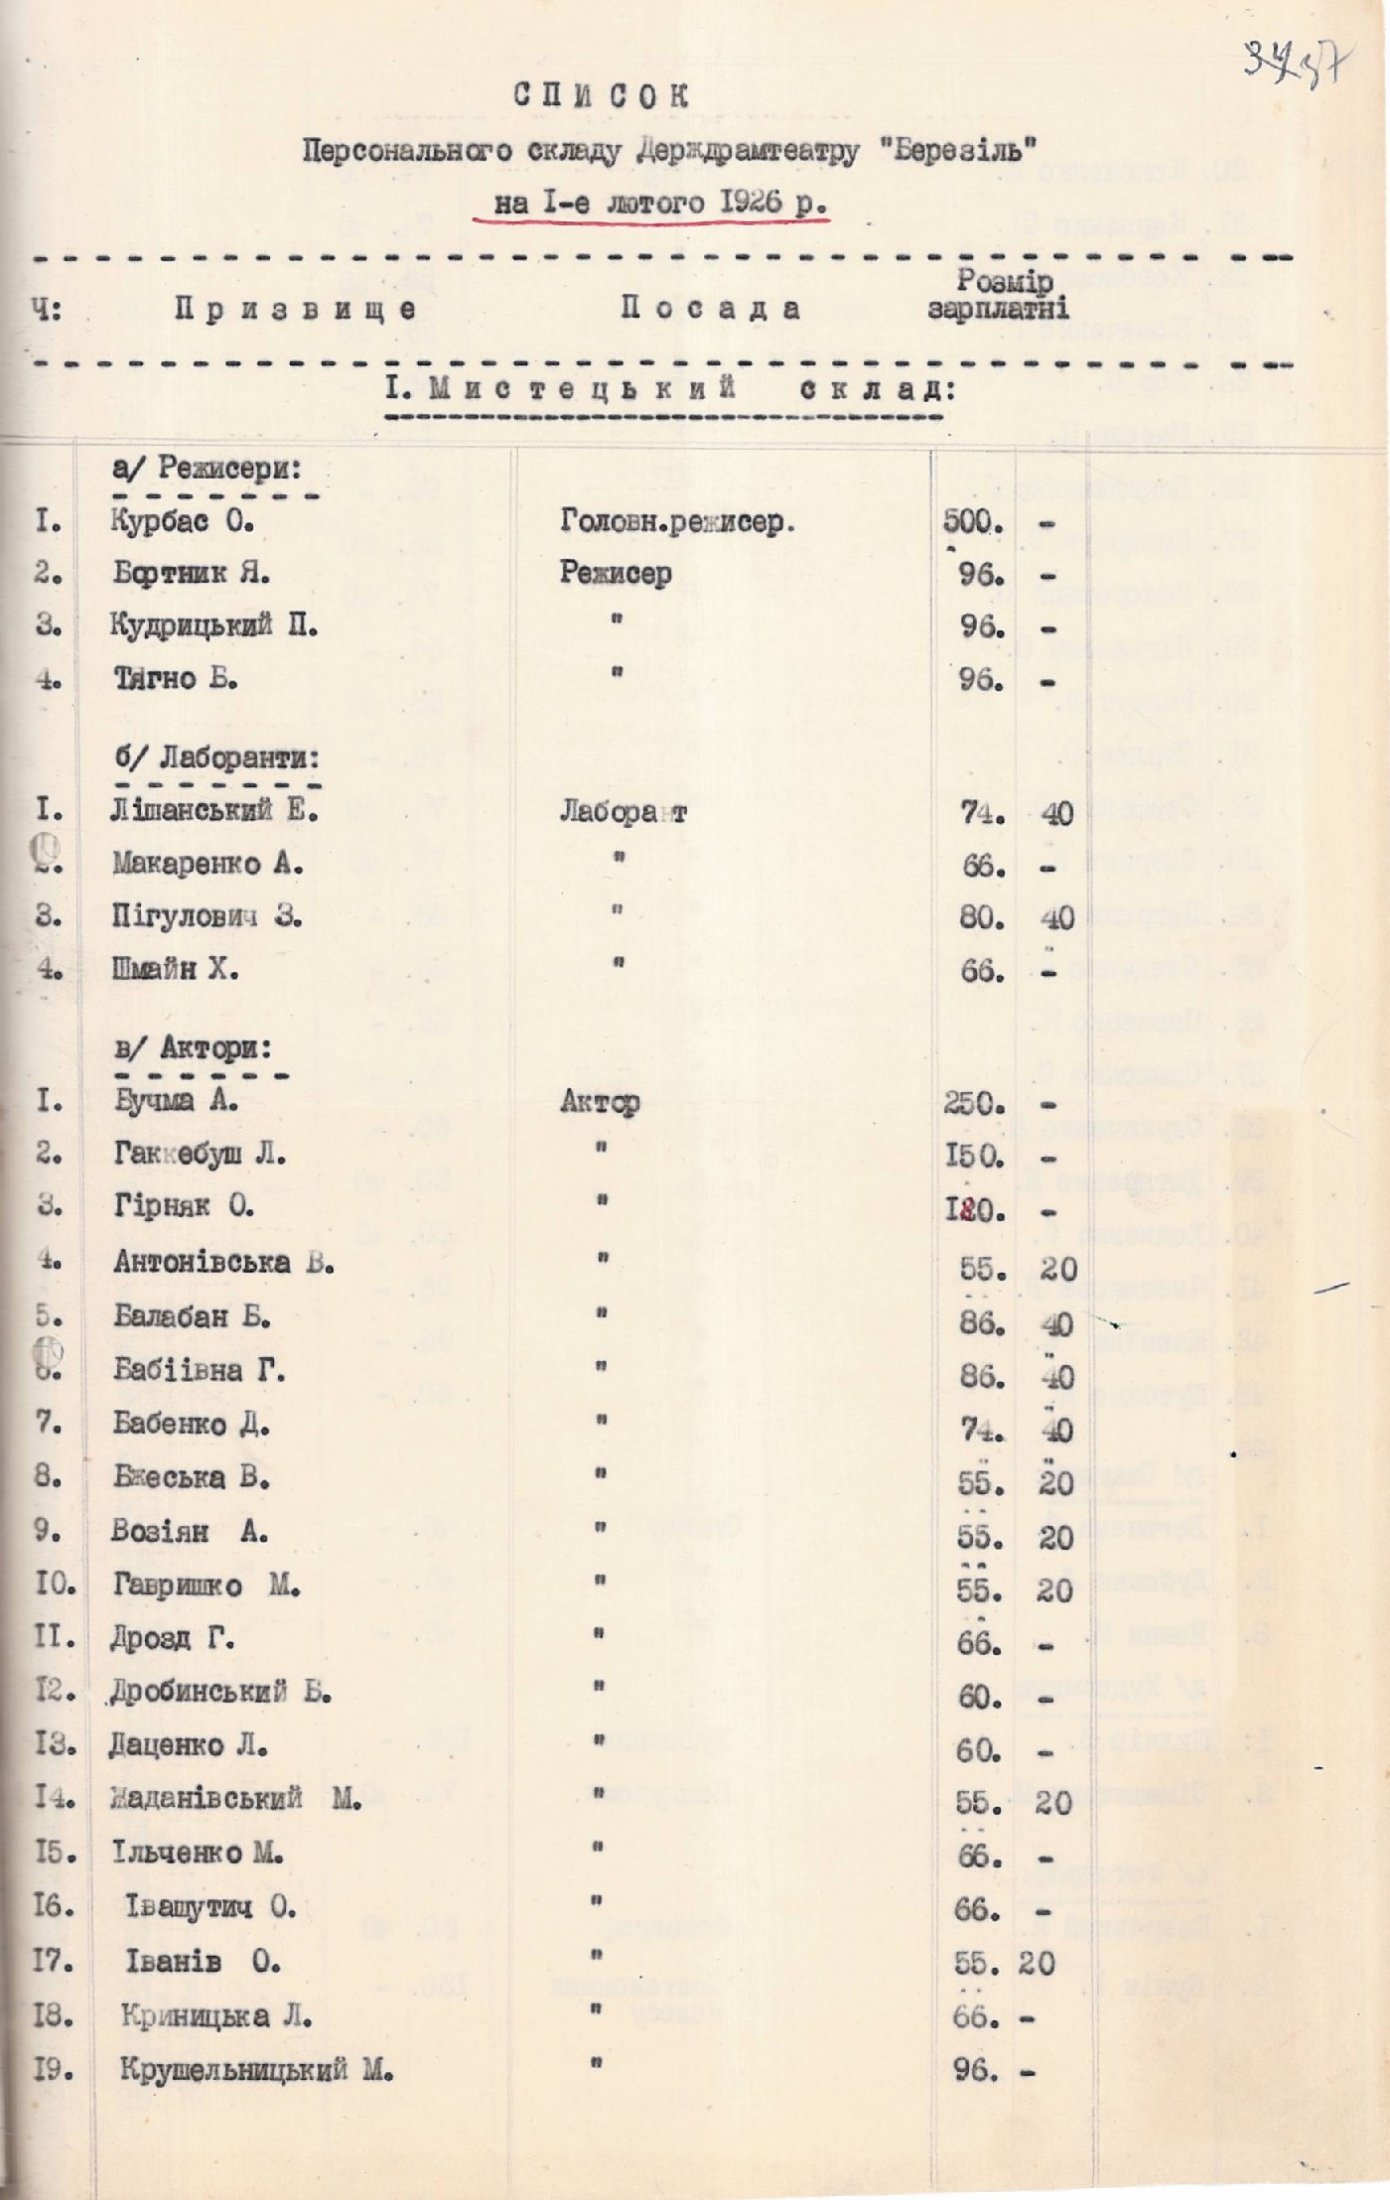 Список персонального складу Державного драматичного театру «Березіль» станом на 01 лютого 1926 р. 22 лютого 1926 р.